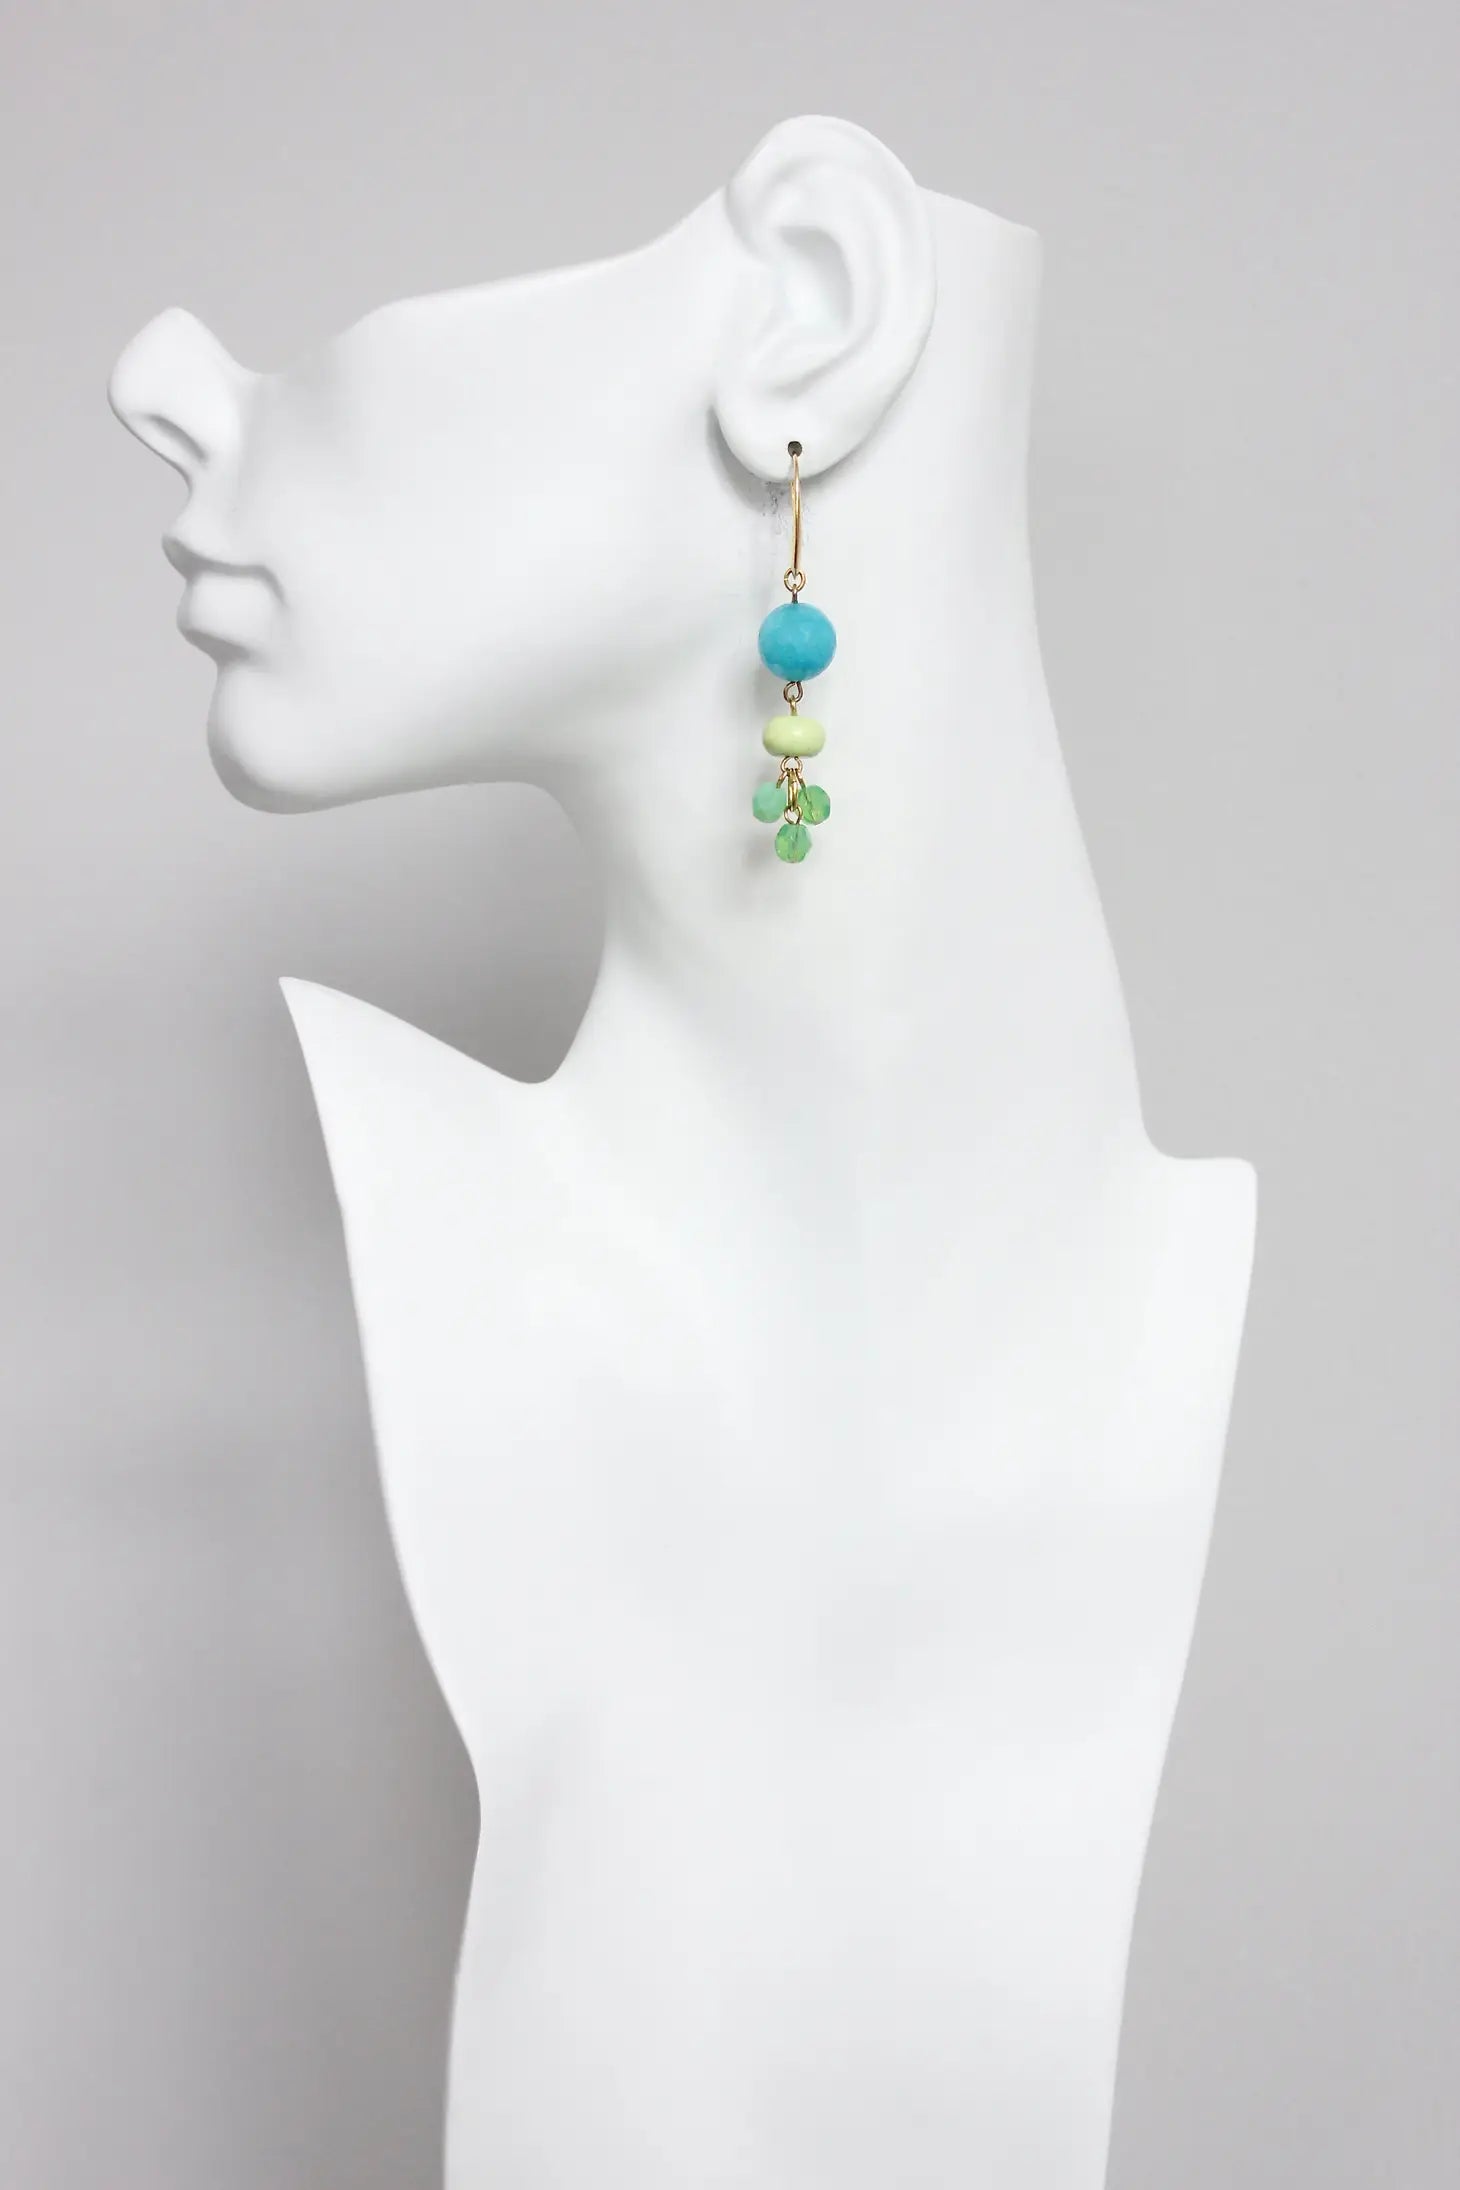 Aqua and Mint Earrings